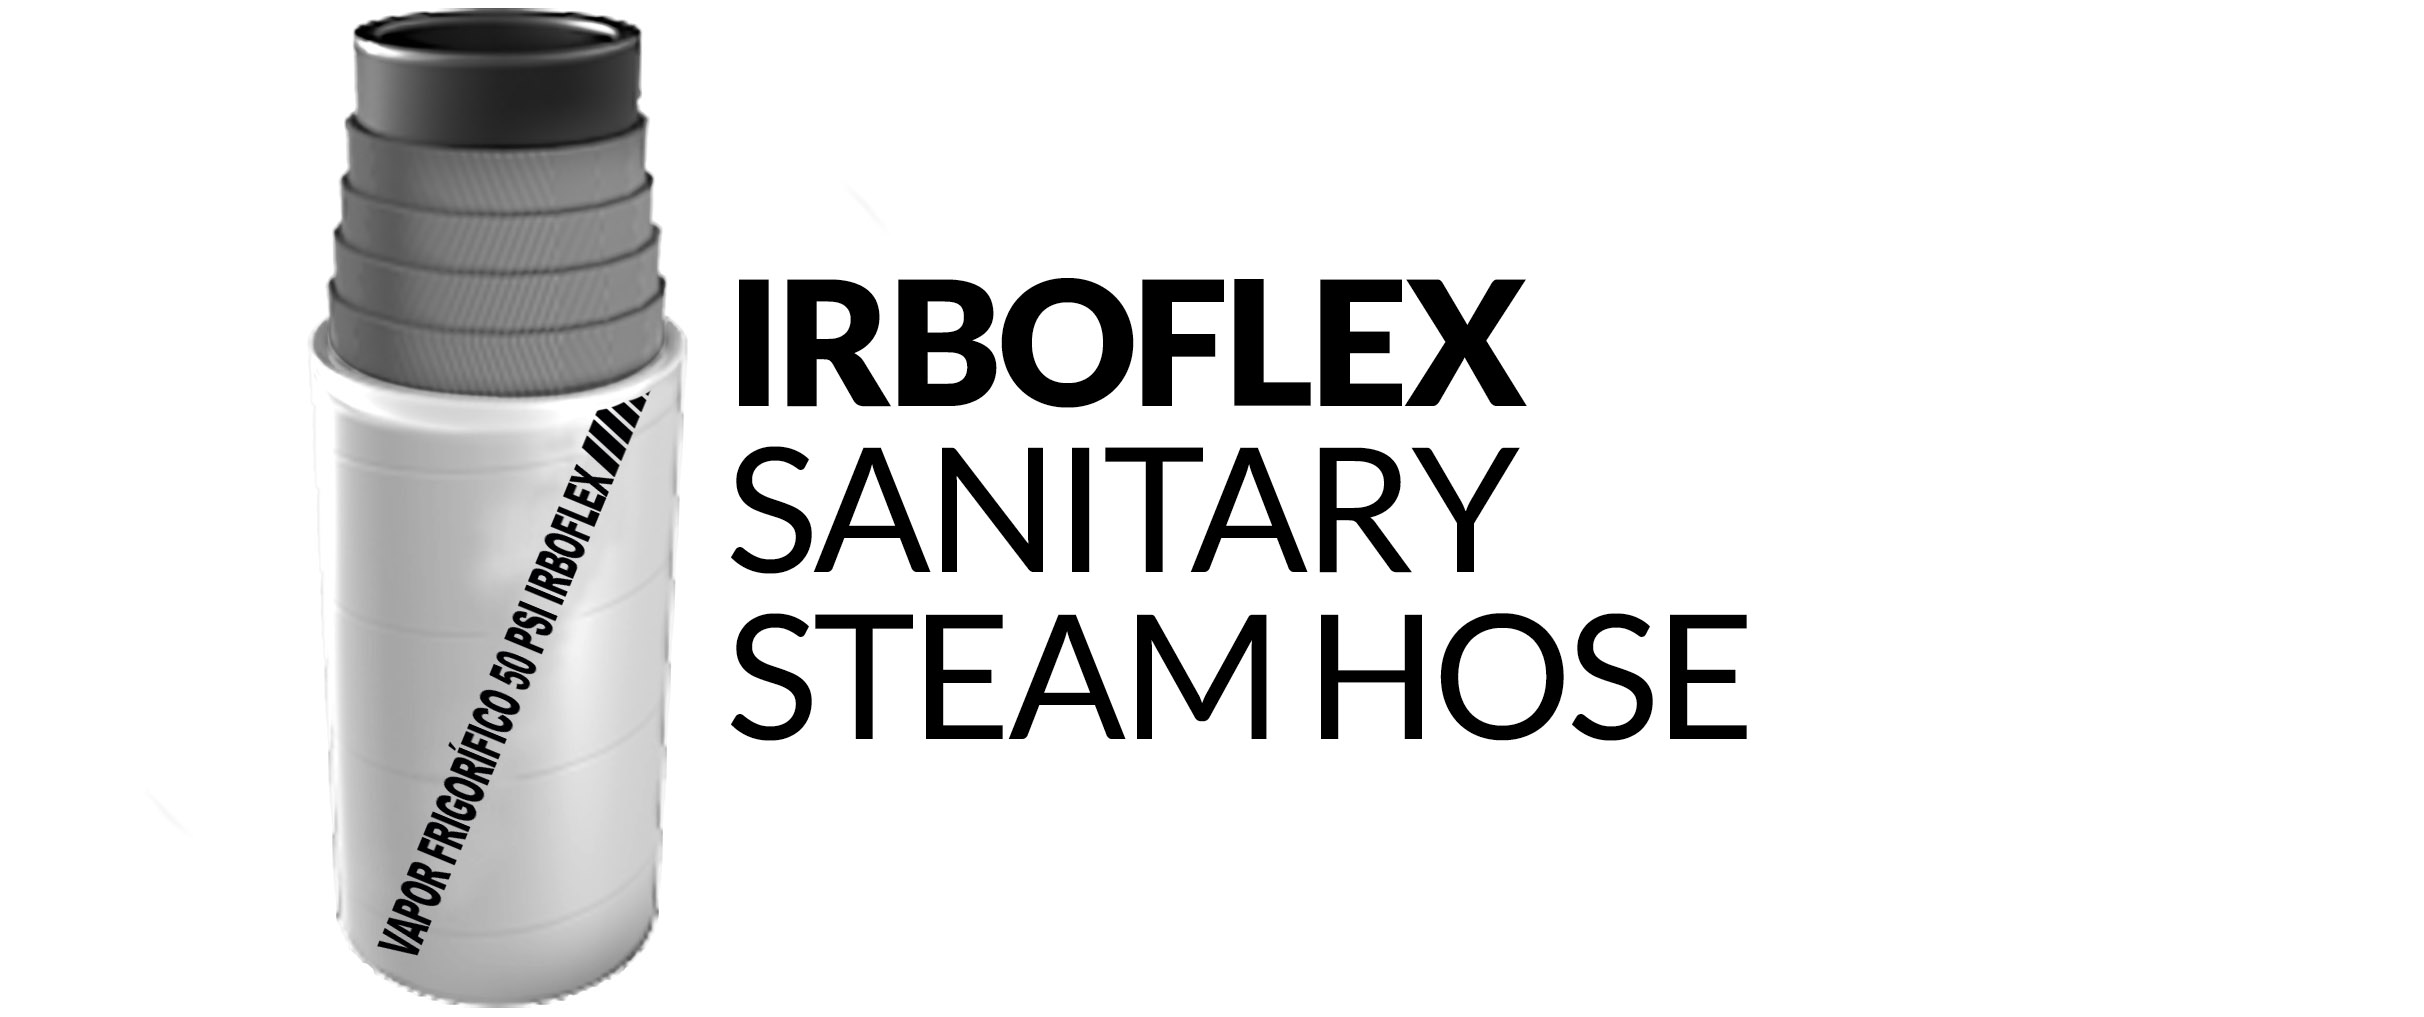 vapor-frigorifico___-_irboflex-sanitary-steam-hose